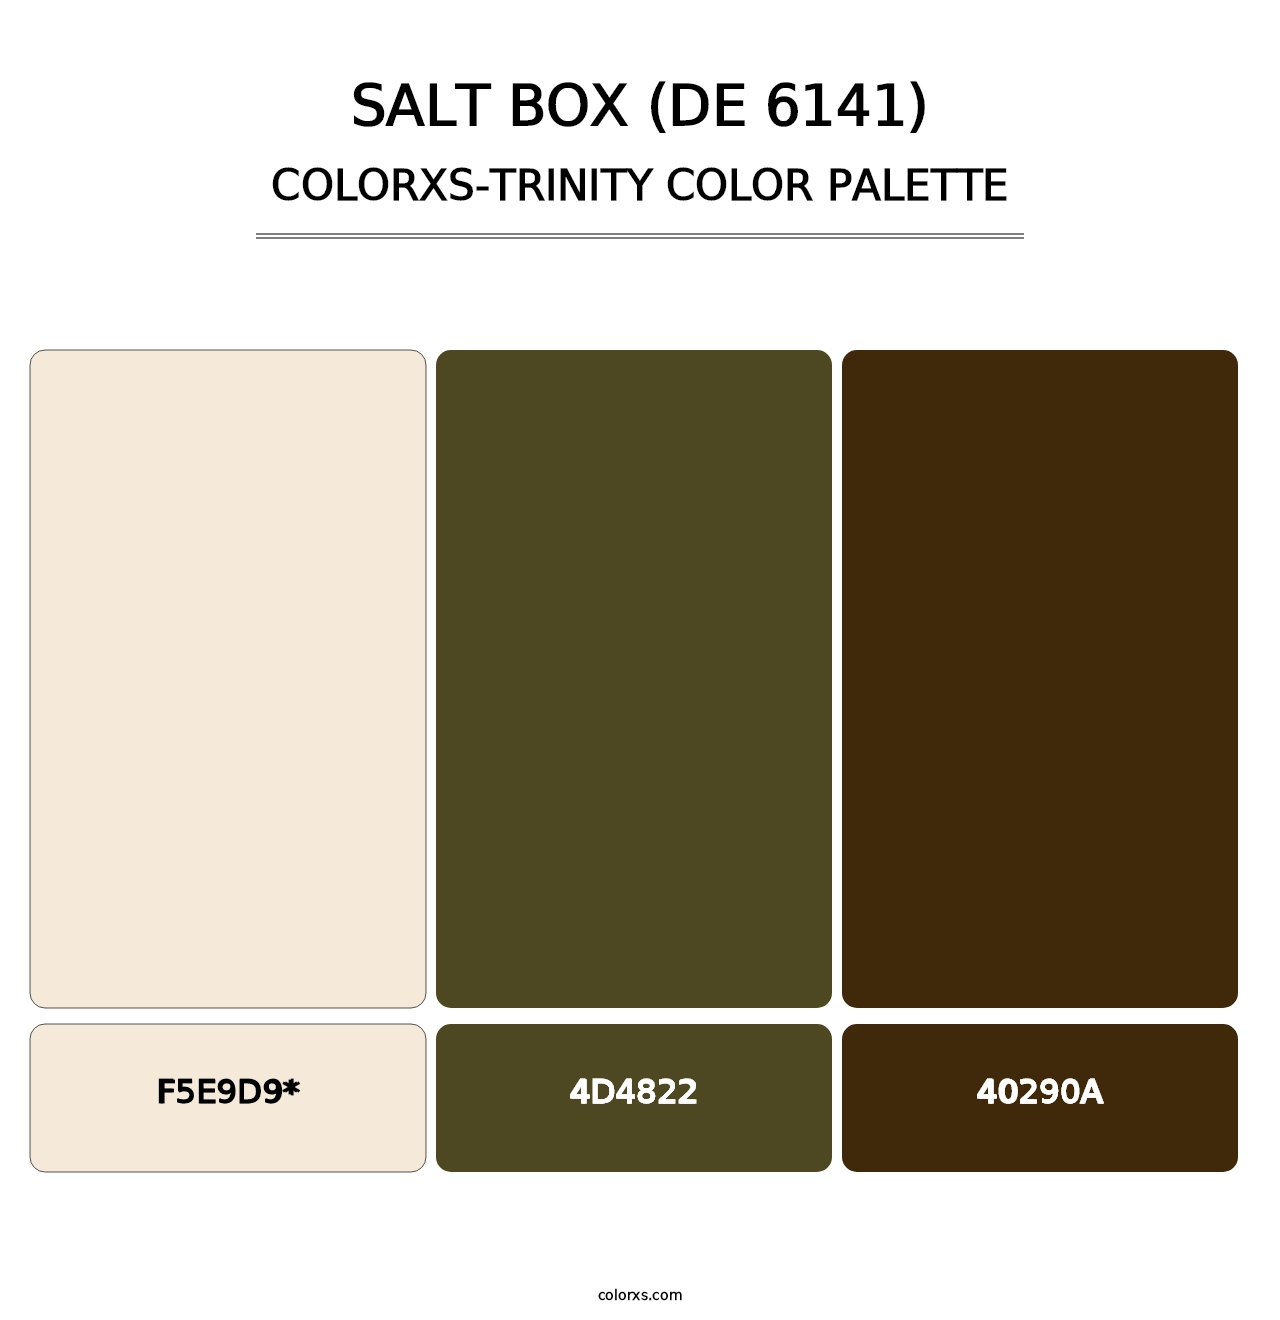 Salt Box (DE 6141) - Colorxs Trinity Palette